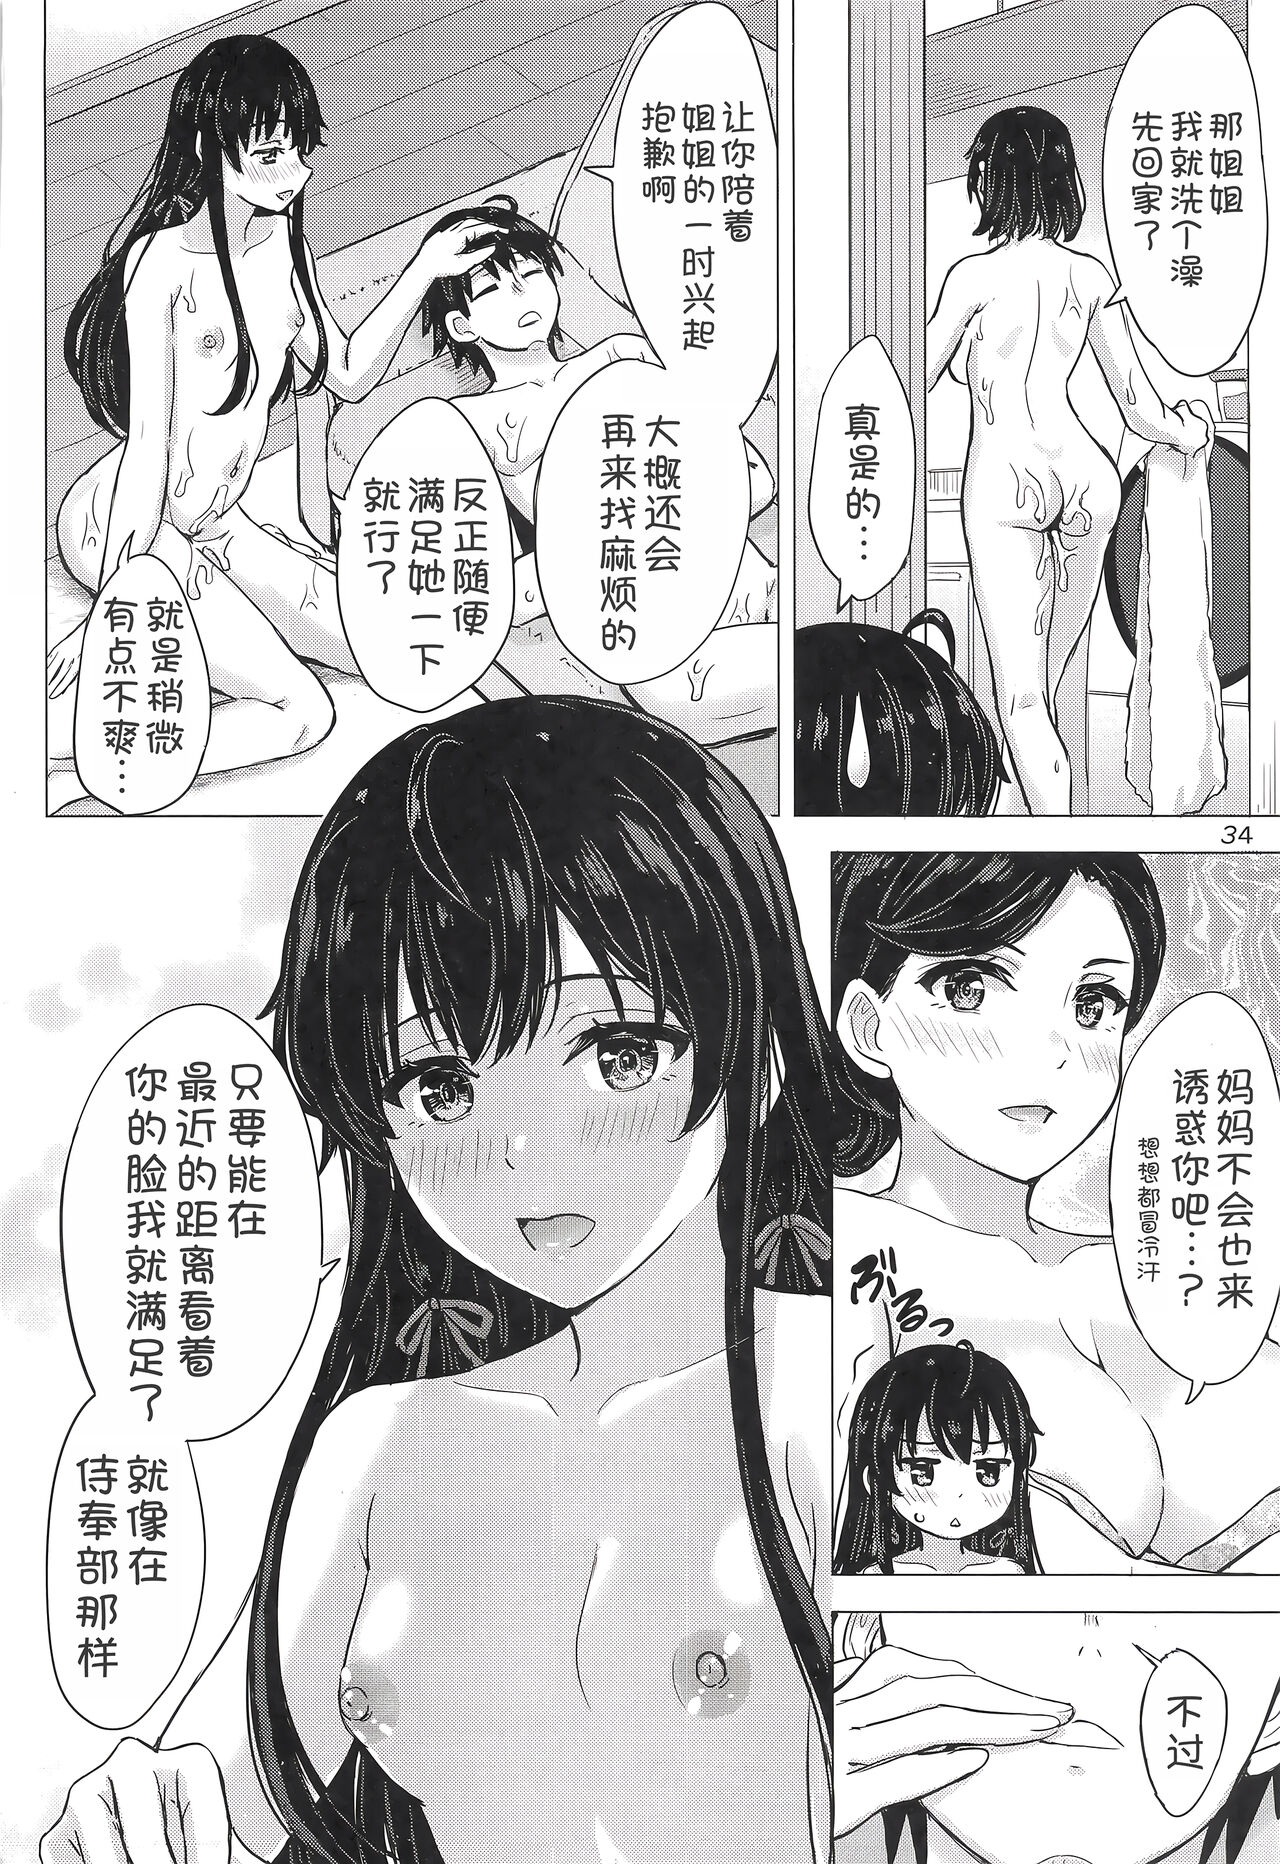 Miwakuteki ni Yukinoshita Shimai ga Rouraku Shite Kuru. - The Yukinoshita sisters continue to have sex with hachiman.